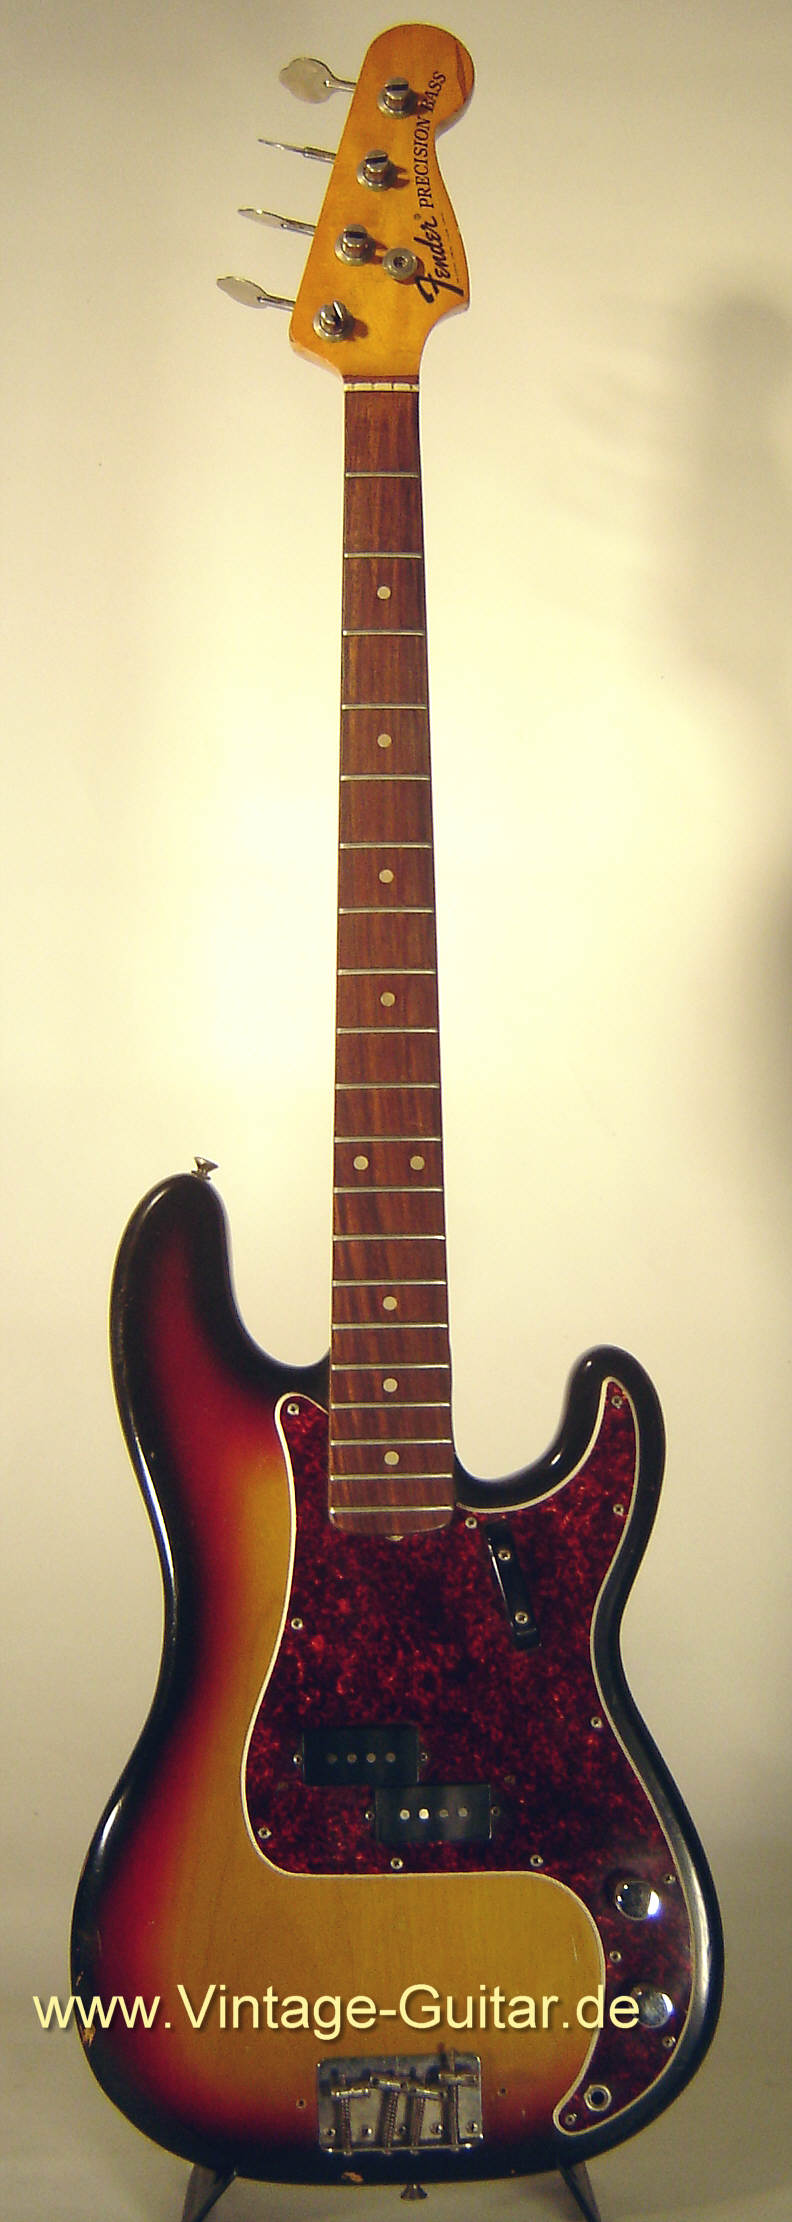 Fender-Precision-Bass-1972-sunburst-1.jpg